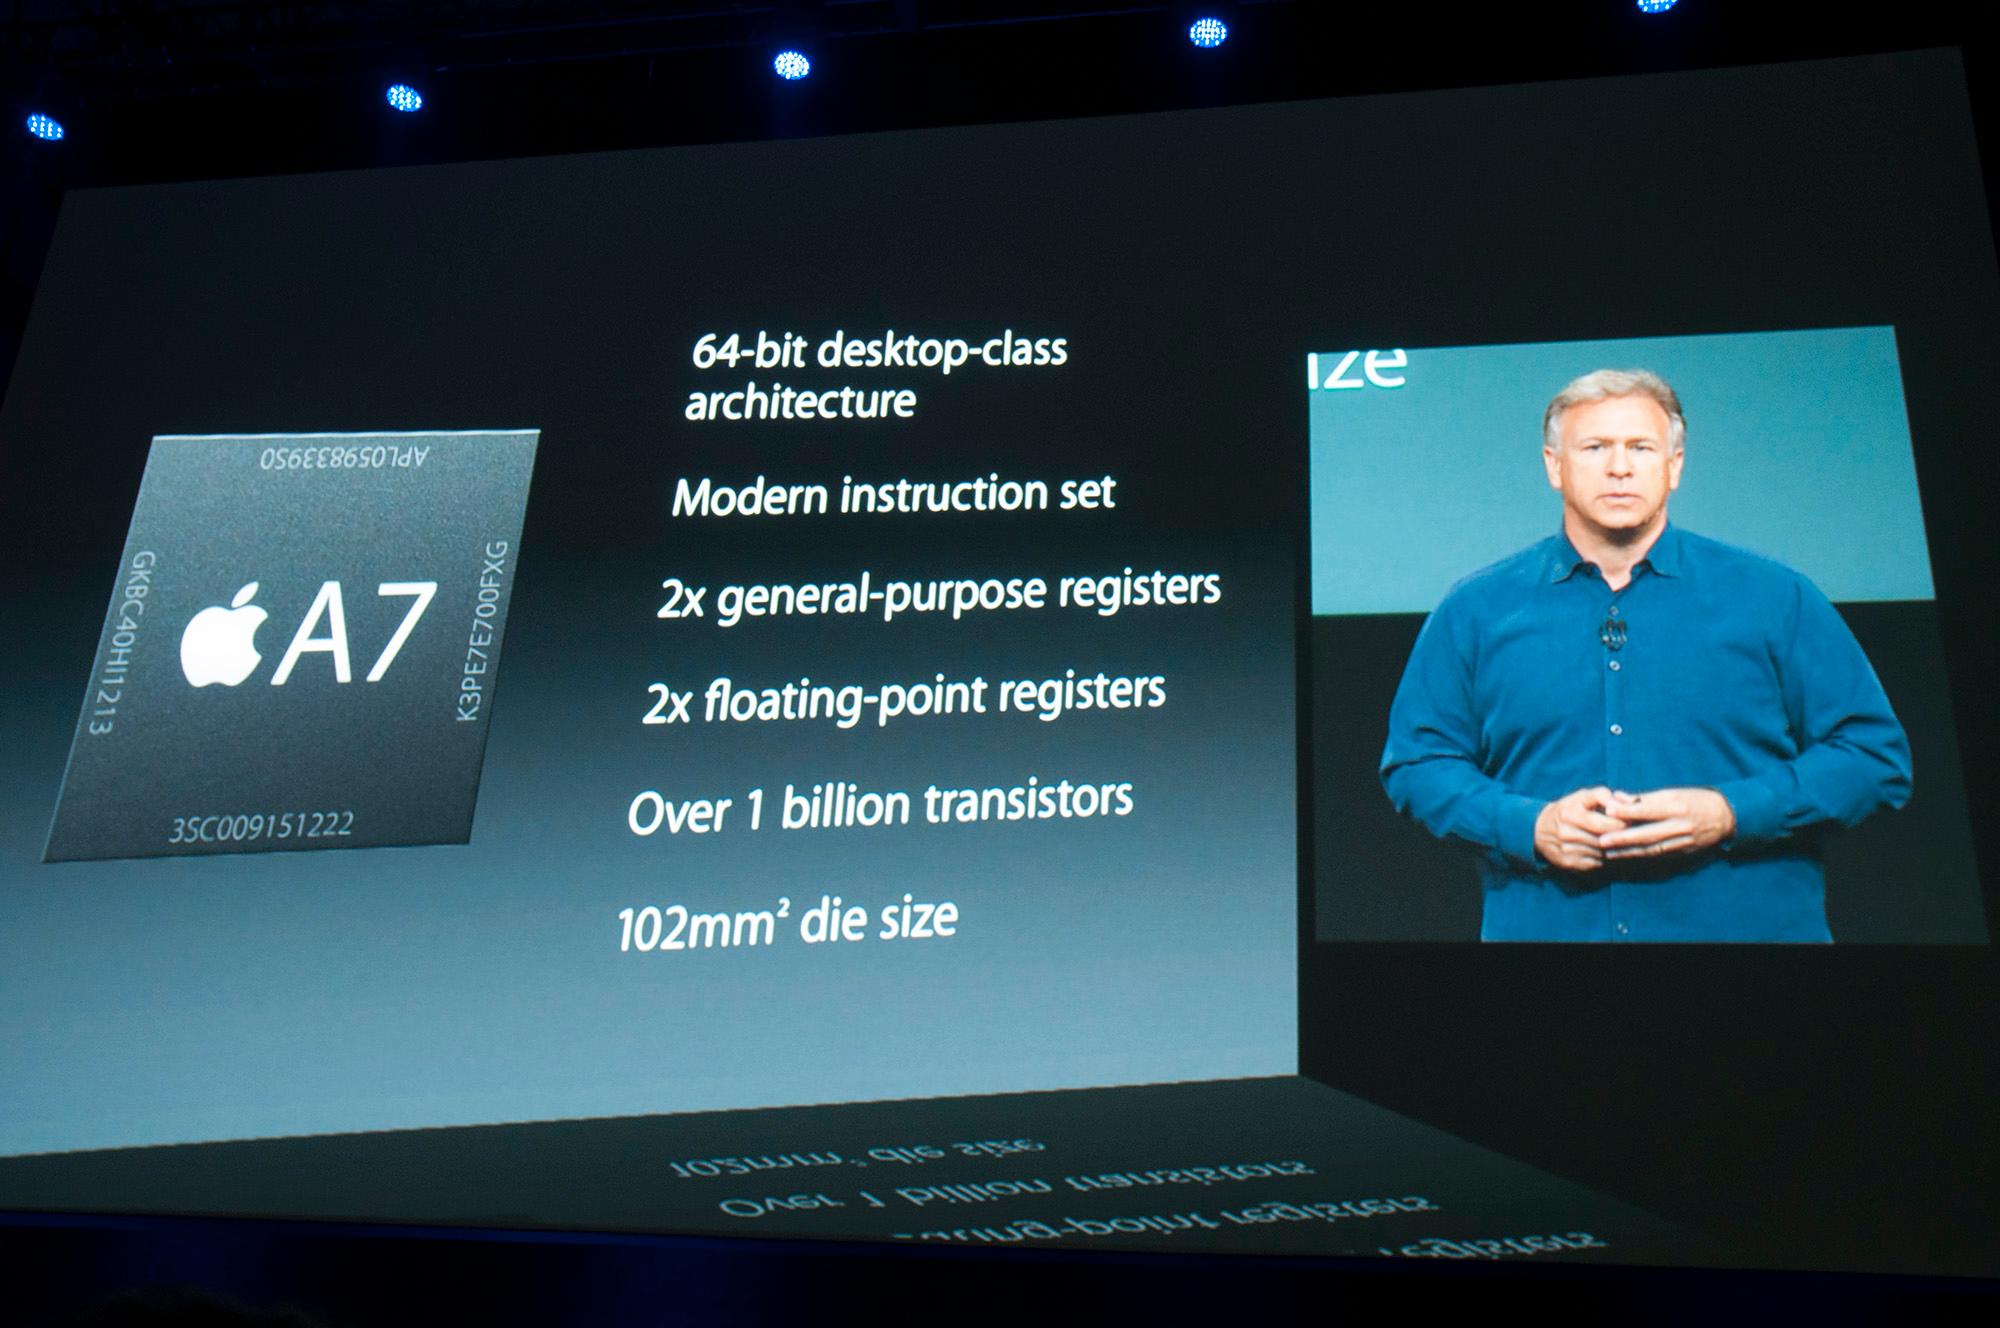 Prosessoren i Apples A7-systembrikke støtter 64-bit-instruksjoner.Foto: Finn Jarle Kvalheim, Amobil.no